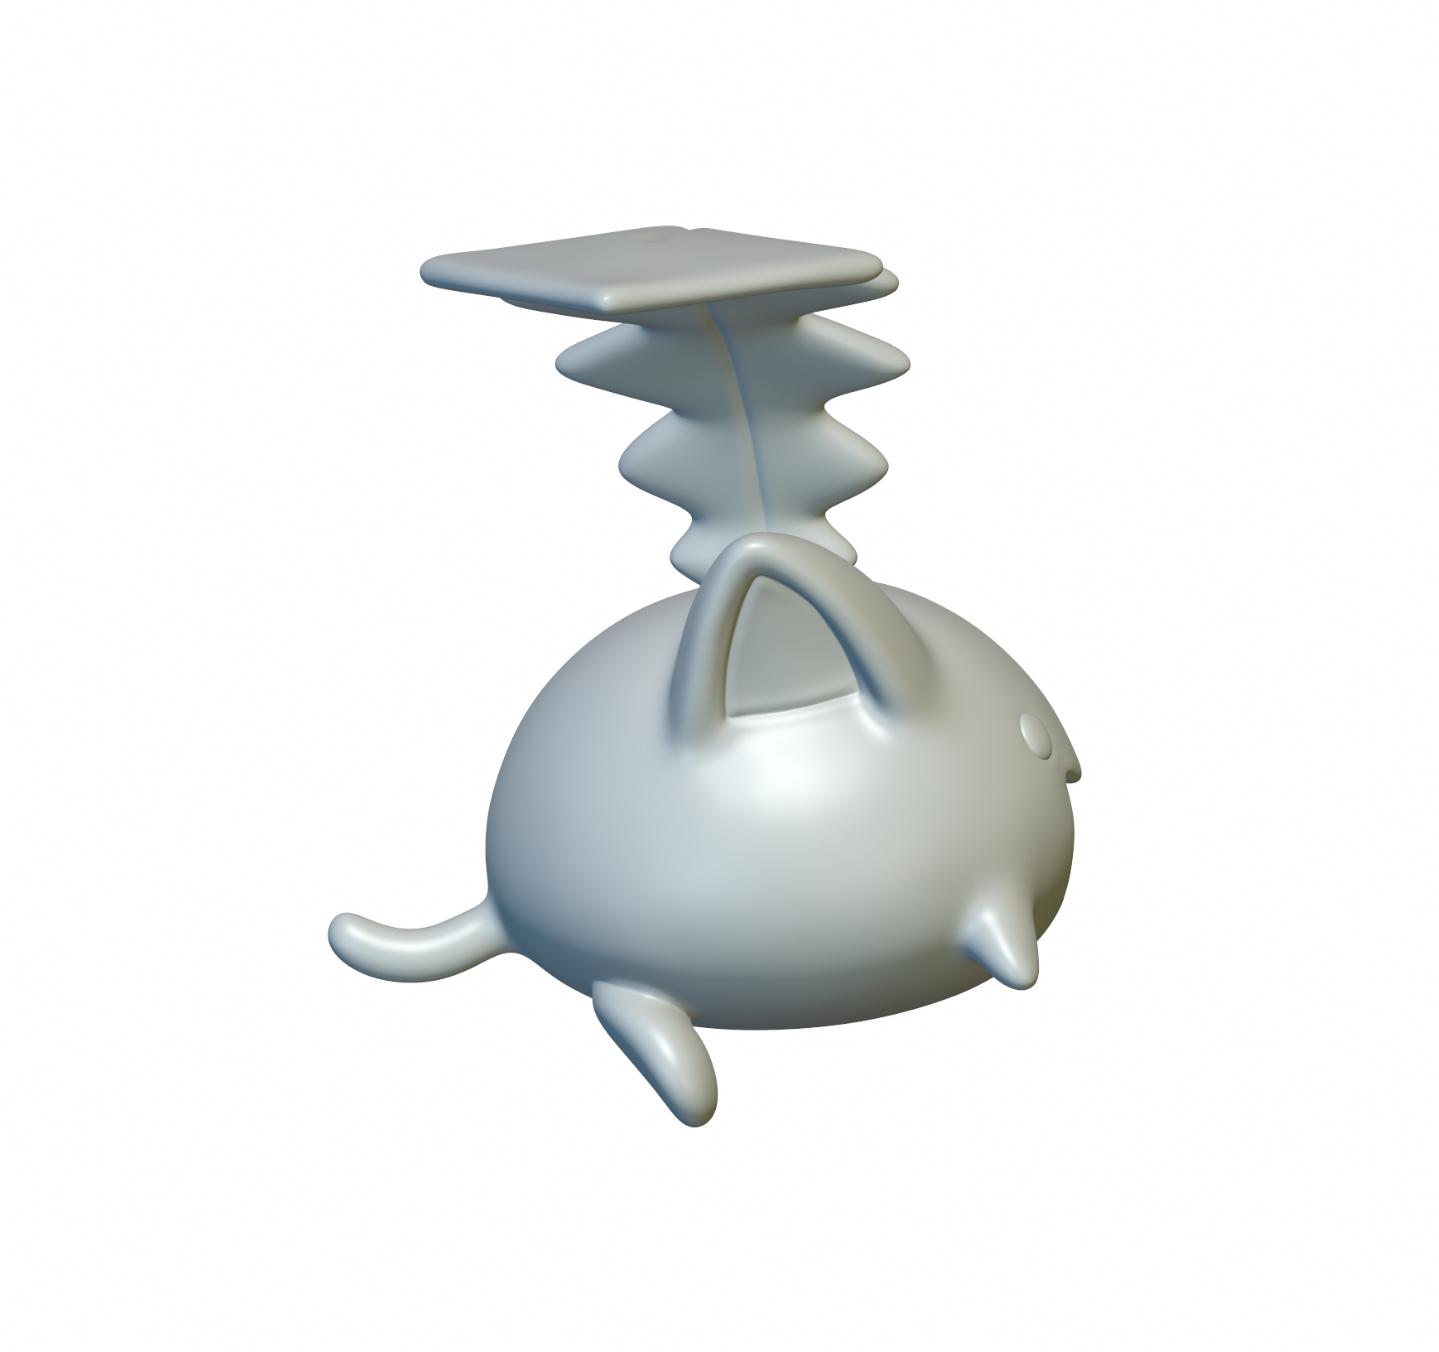 Pokemon Hoppip #187 - Optimized for 3D Printing 3d model